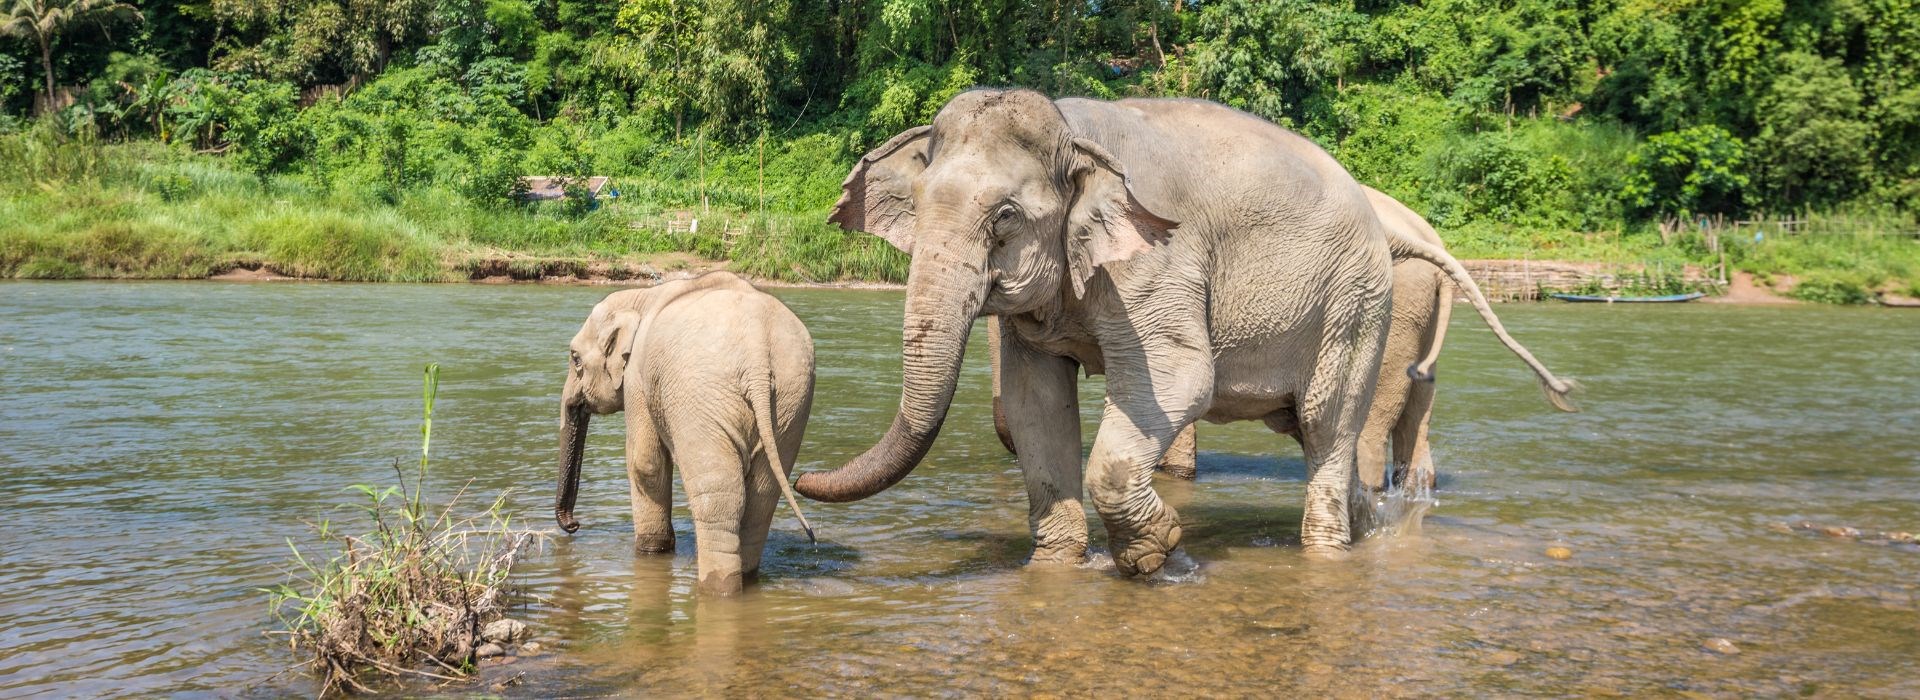 Visiter Un sanctuaire pour éléphants - Laos